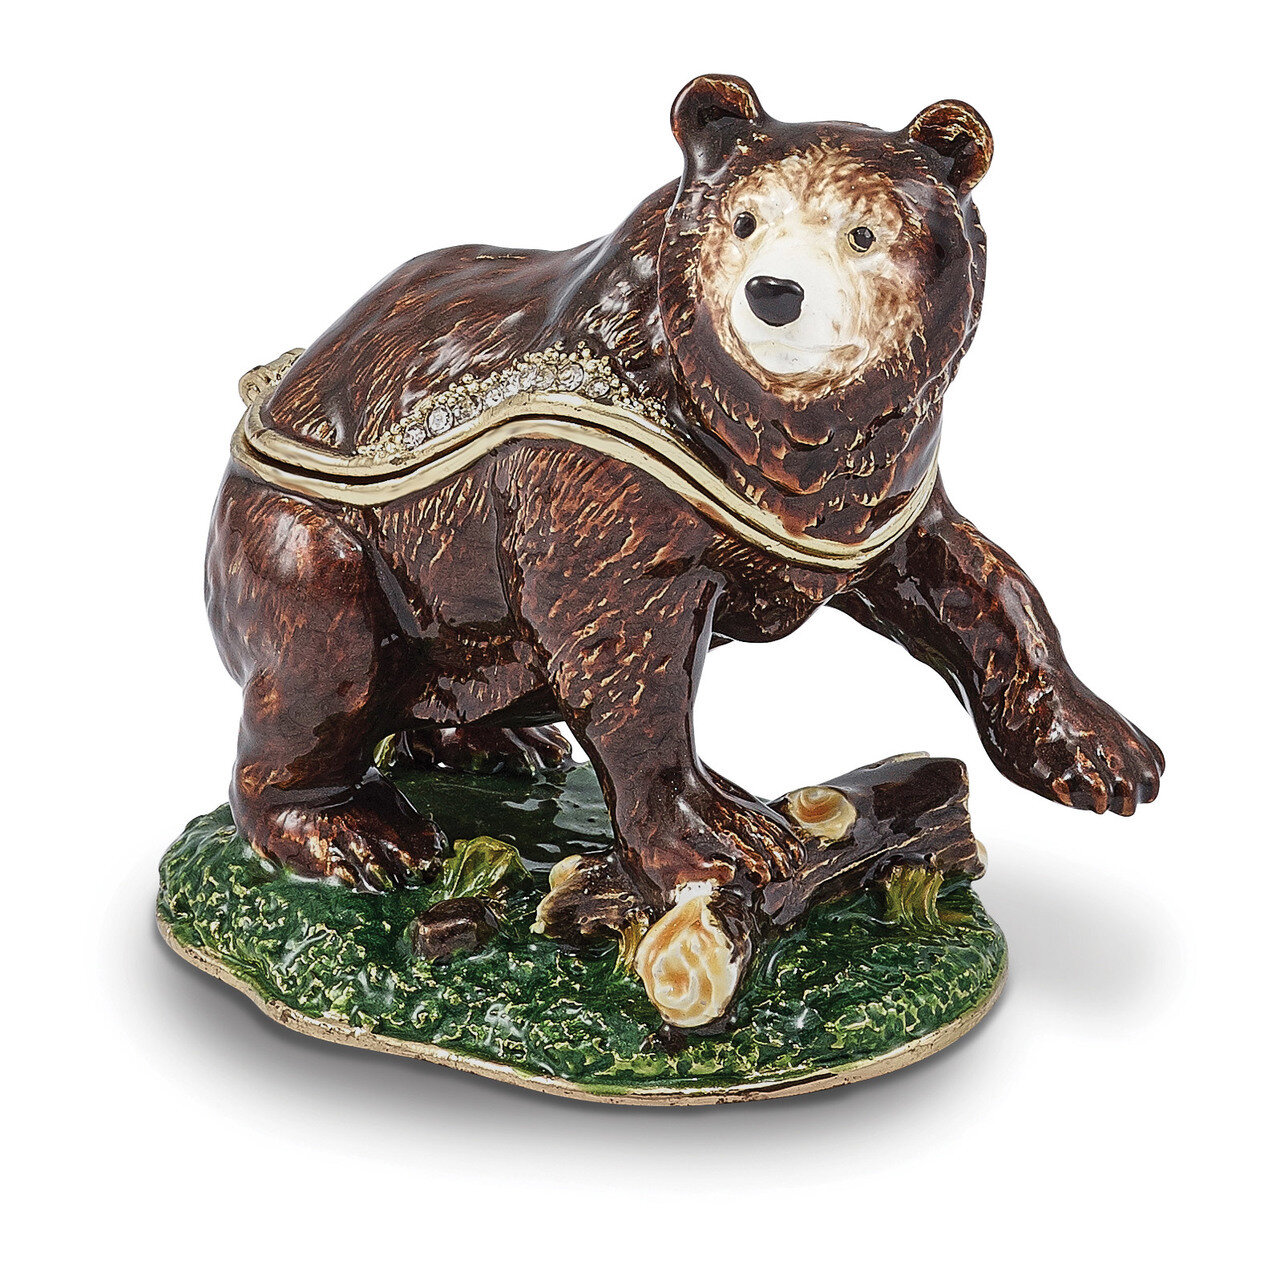 Kodiak Bear Trinket Box Enamel on Pewter by Jere